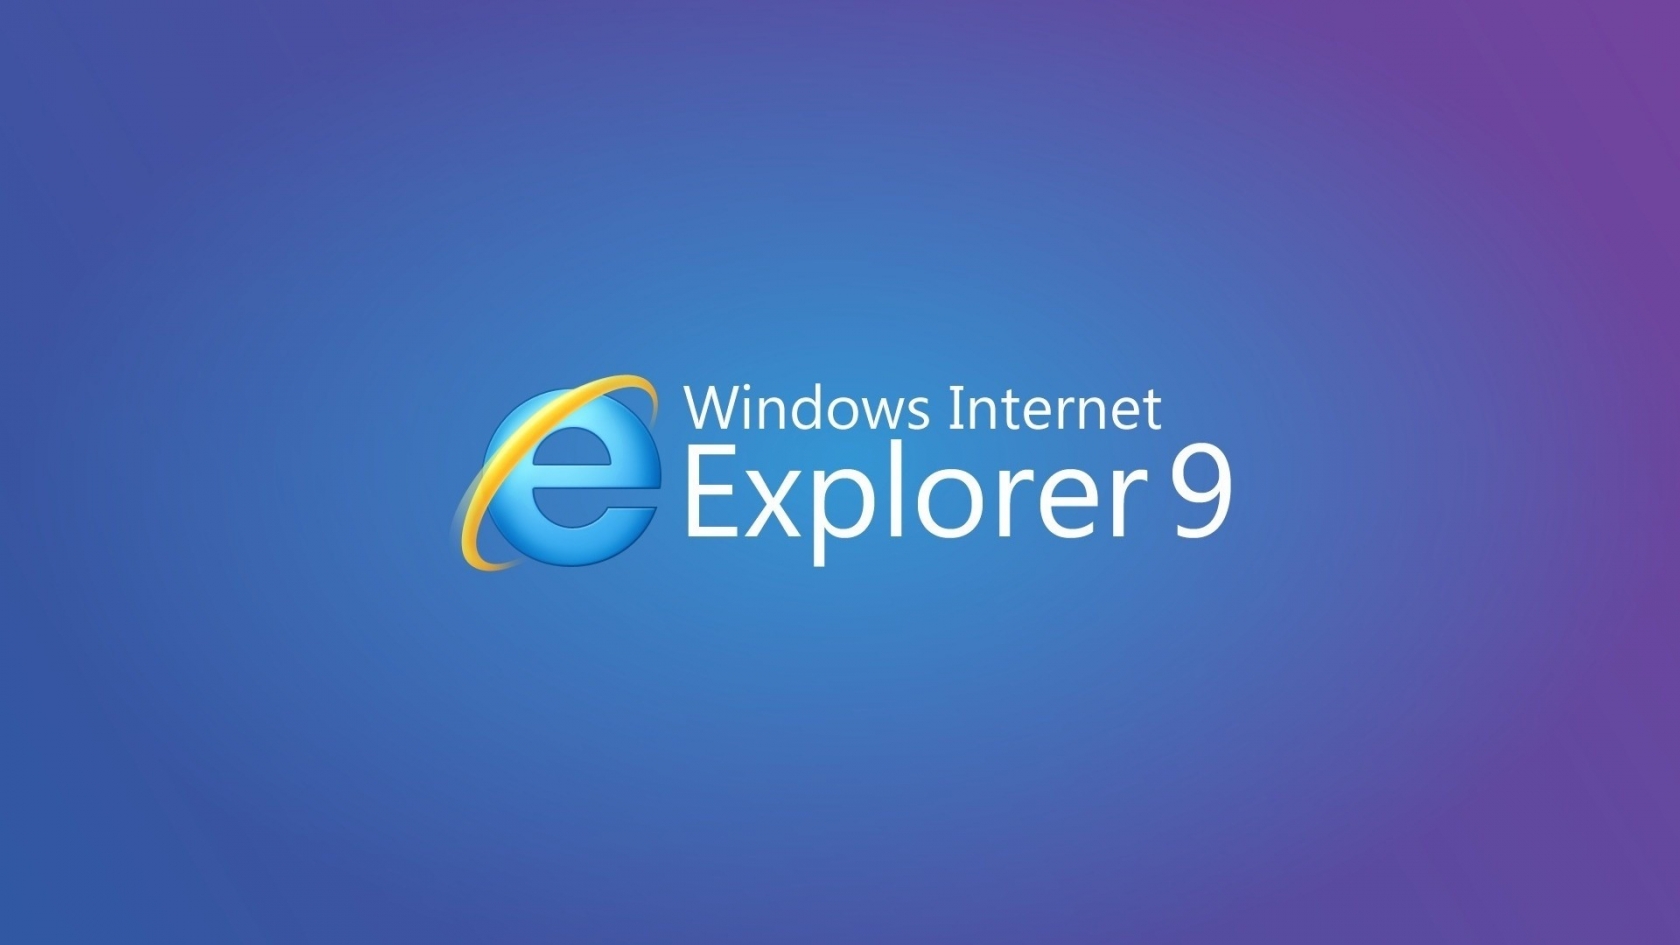 Internet Explorer 9 for 1680 x 945 HDTV resolution